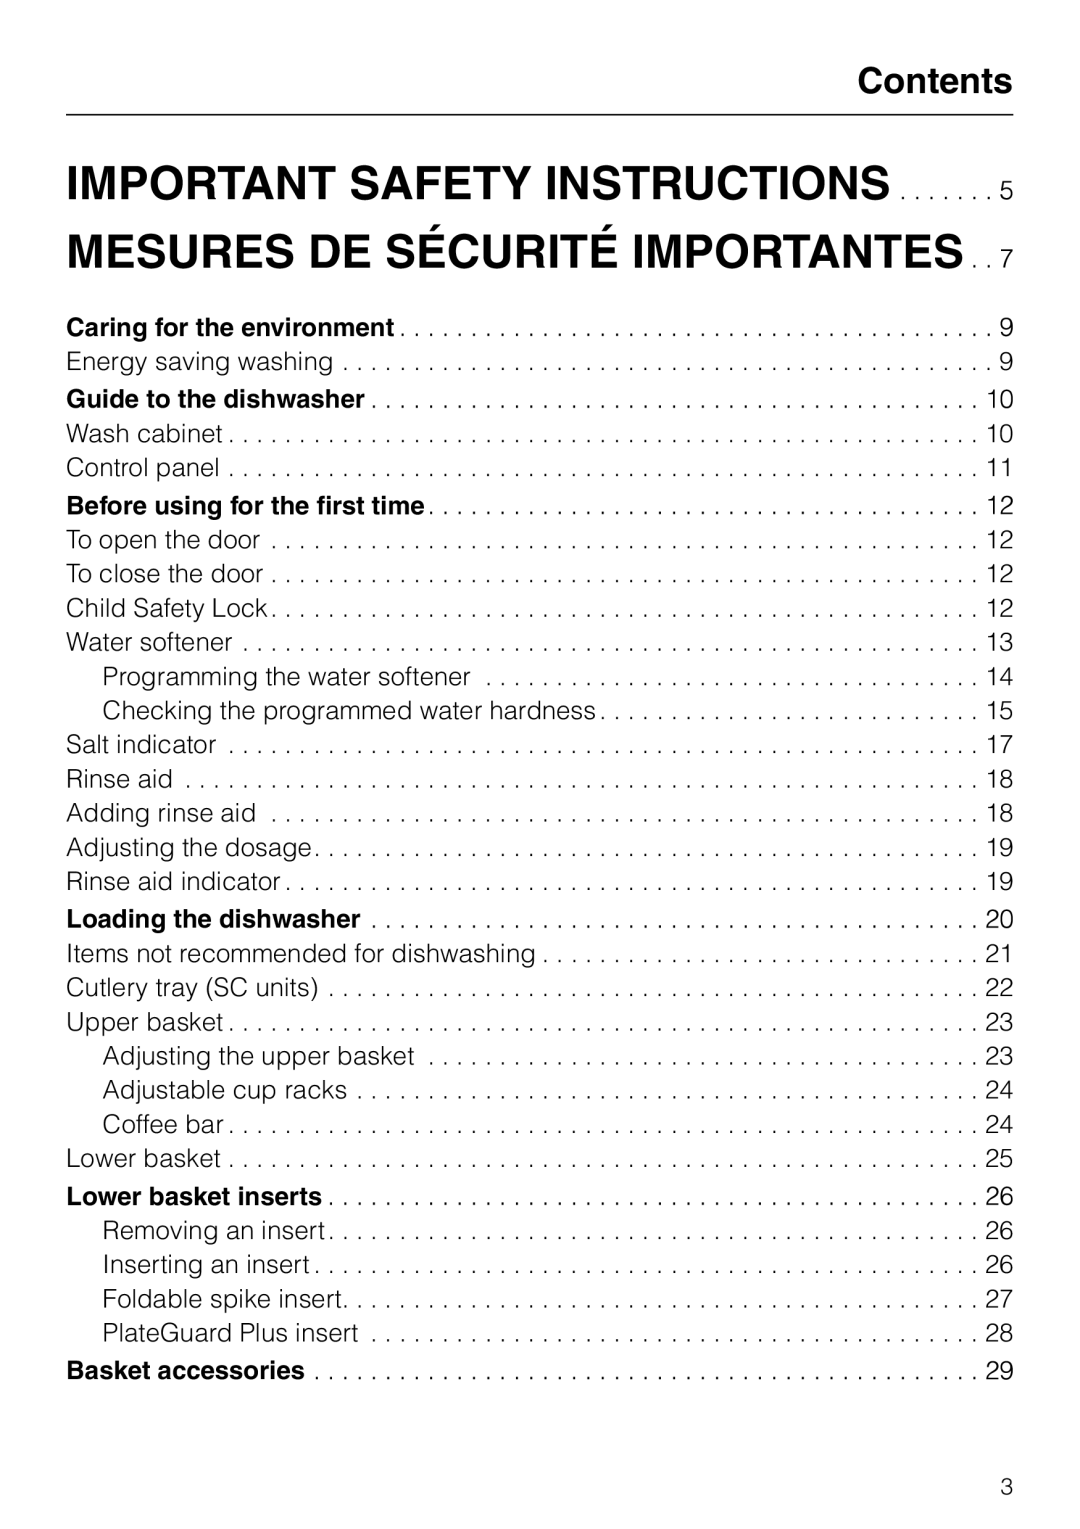 Miele G 851 operating instructions Important Safety Instructions, Mesures De Sécurité Importantes, Contents 